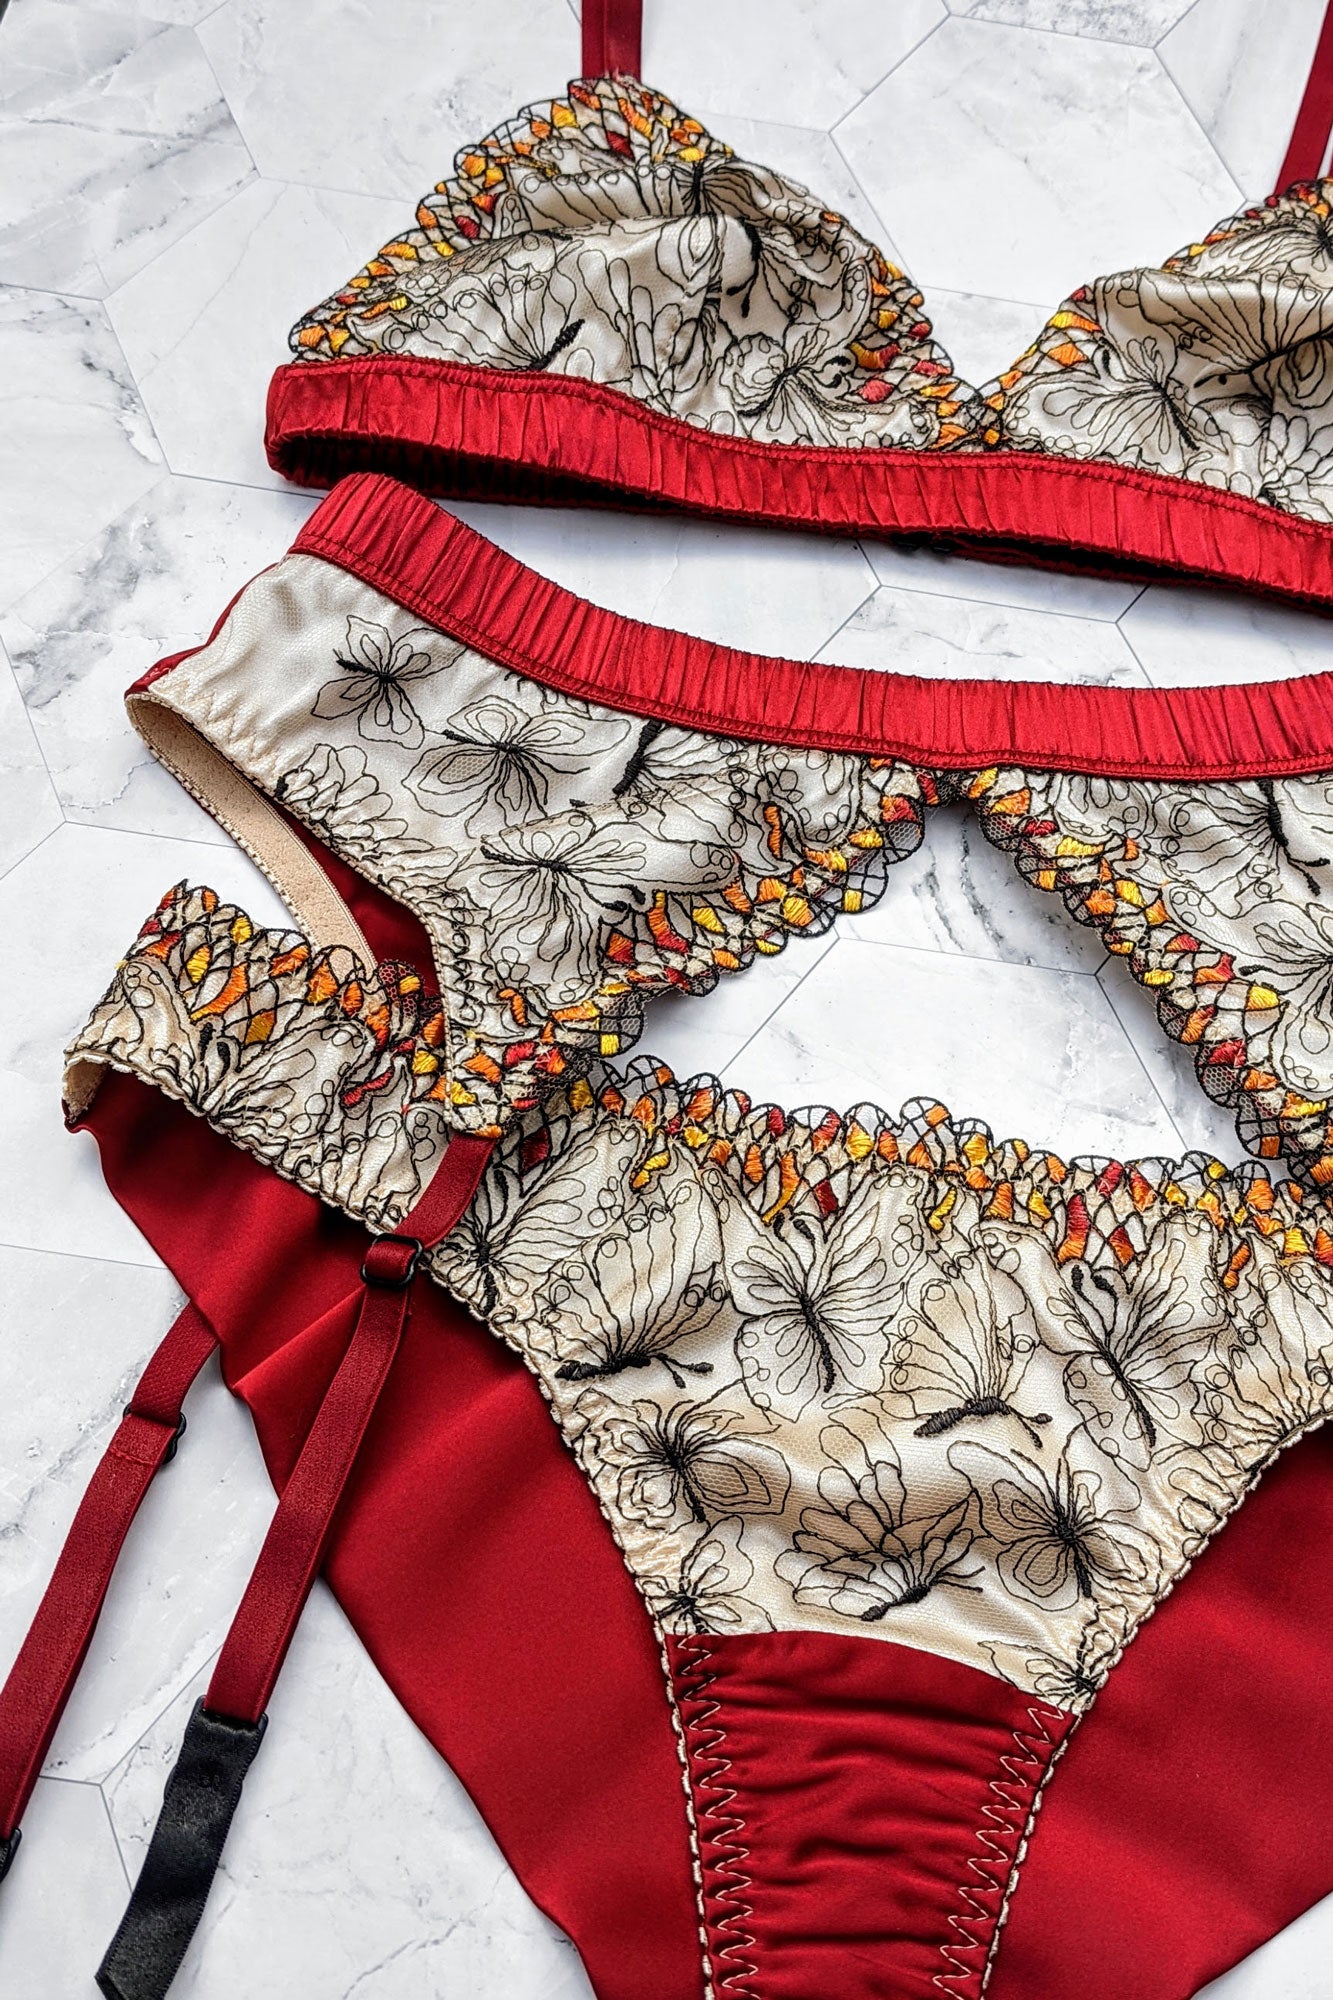 Retro silk lingerie set with a red garter belt